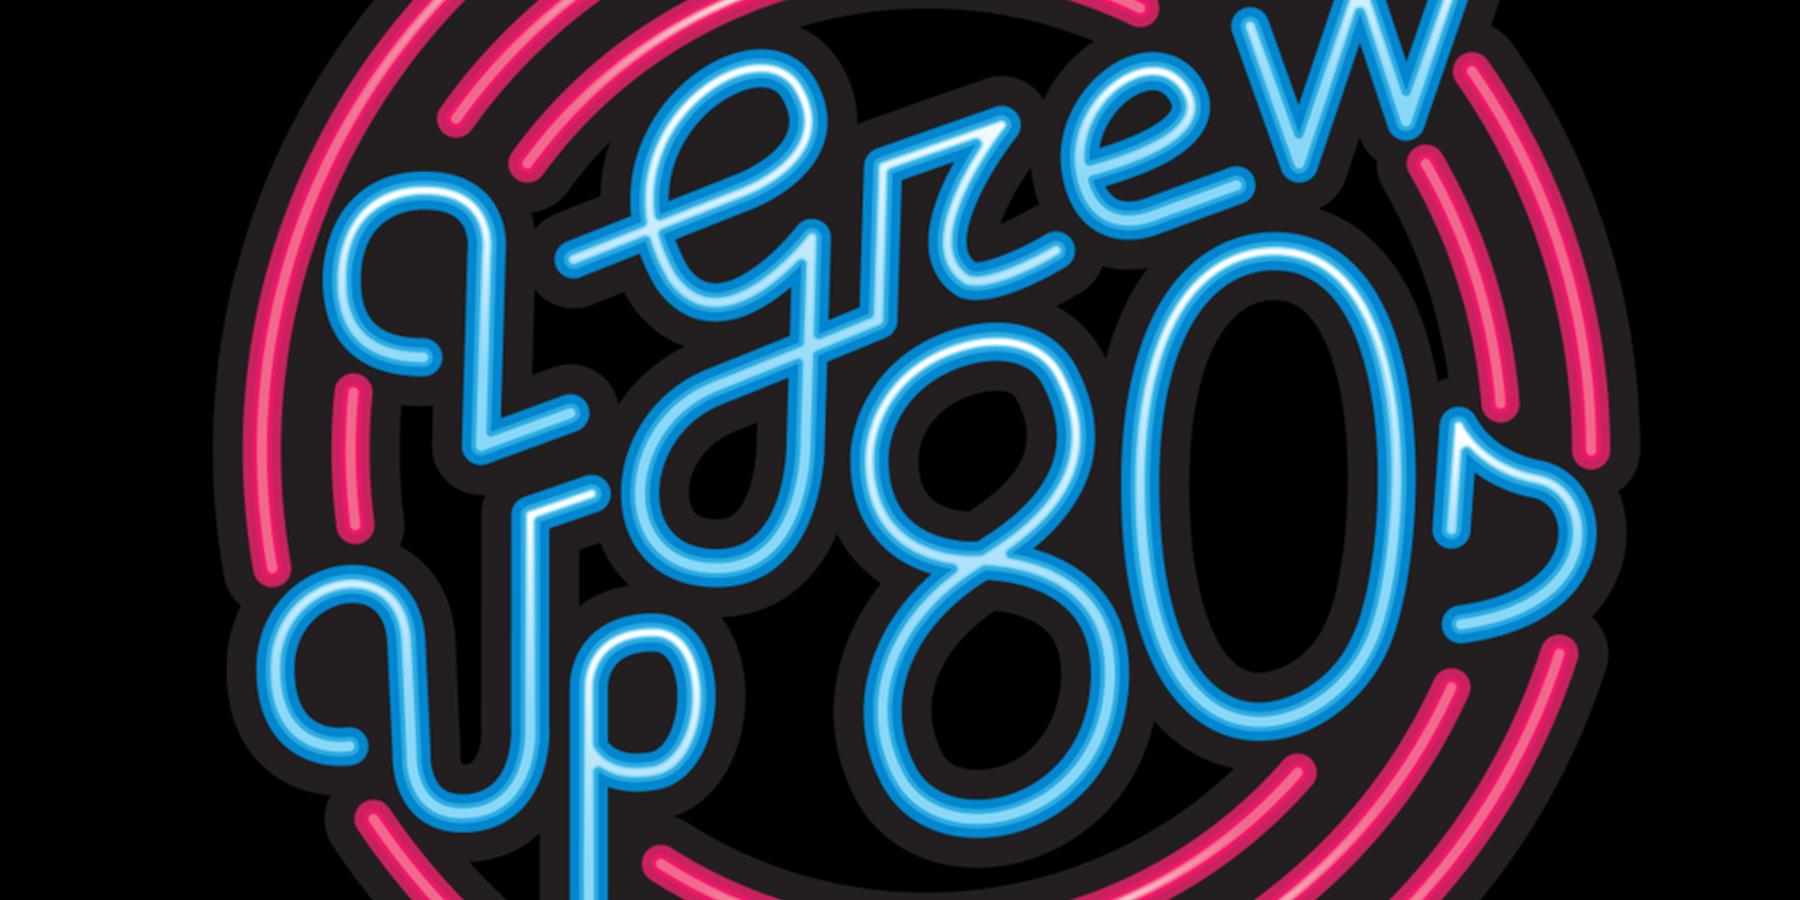 I Grew Up 80s logo